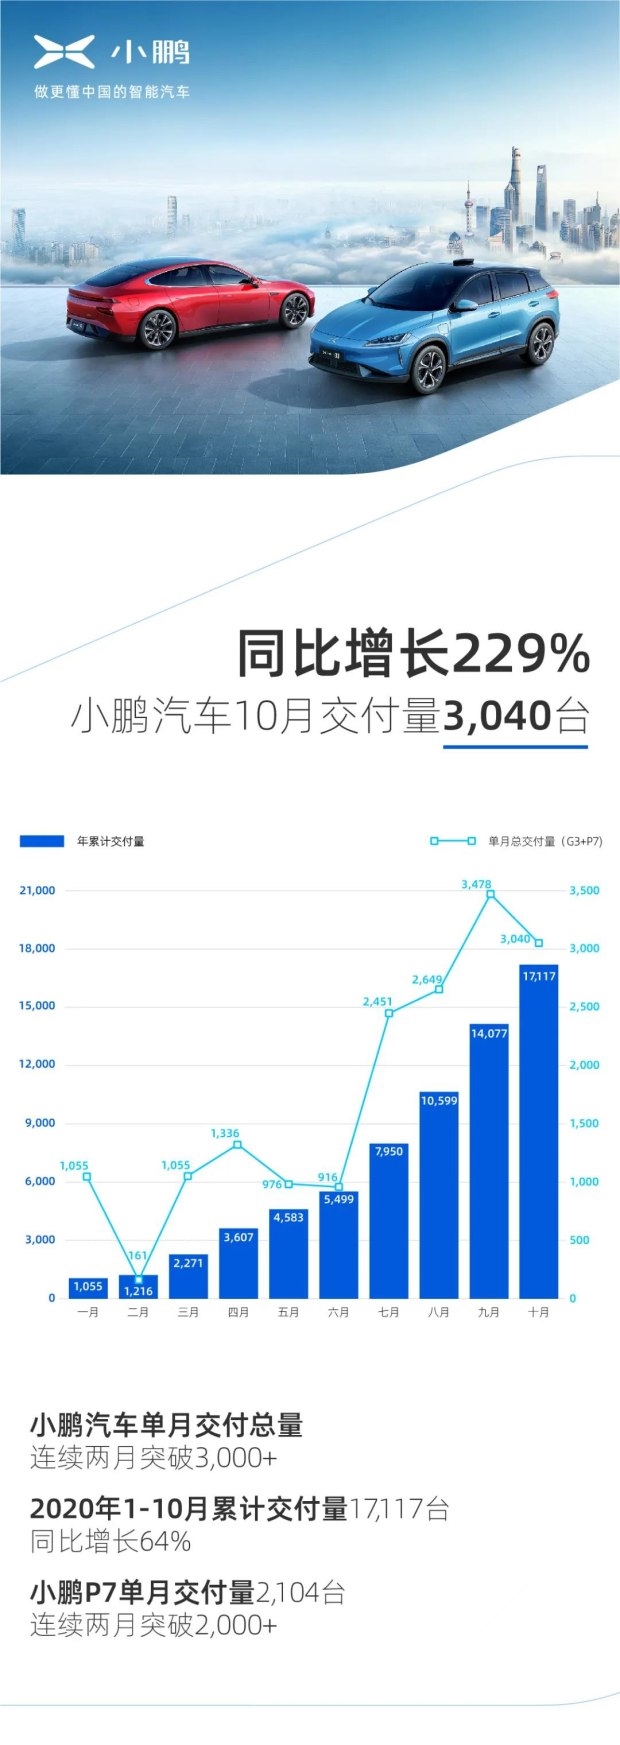 小鹏汽车10月交付3040台-同比增长229